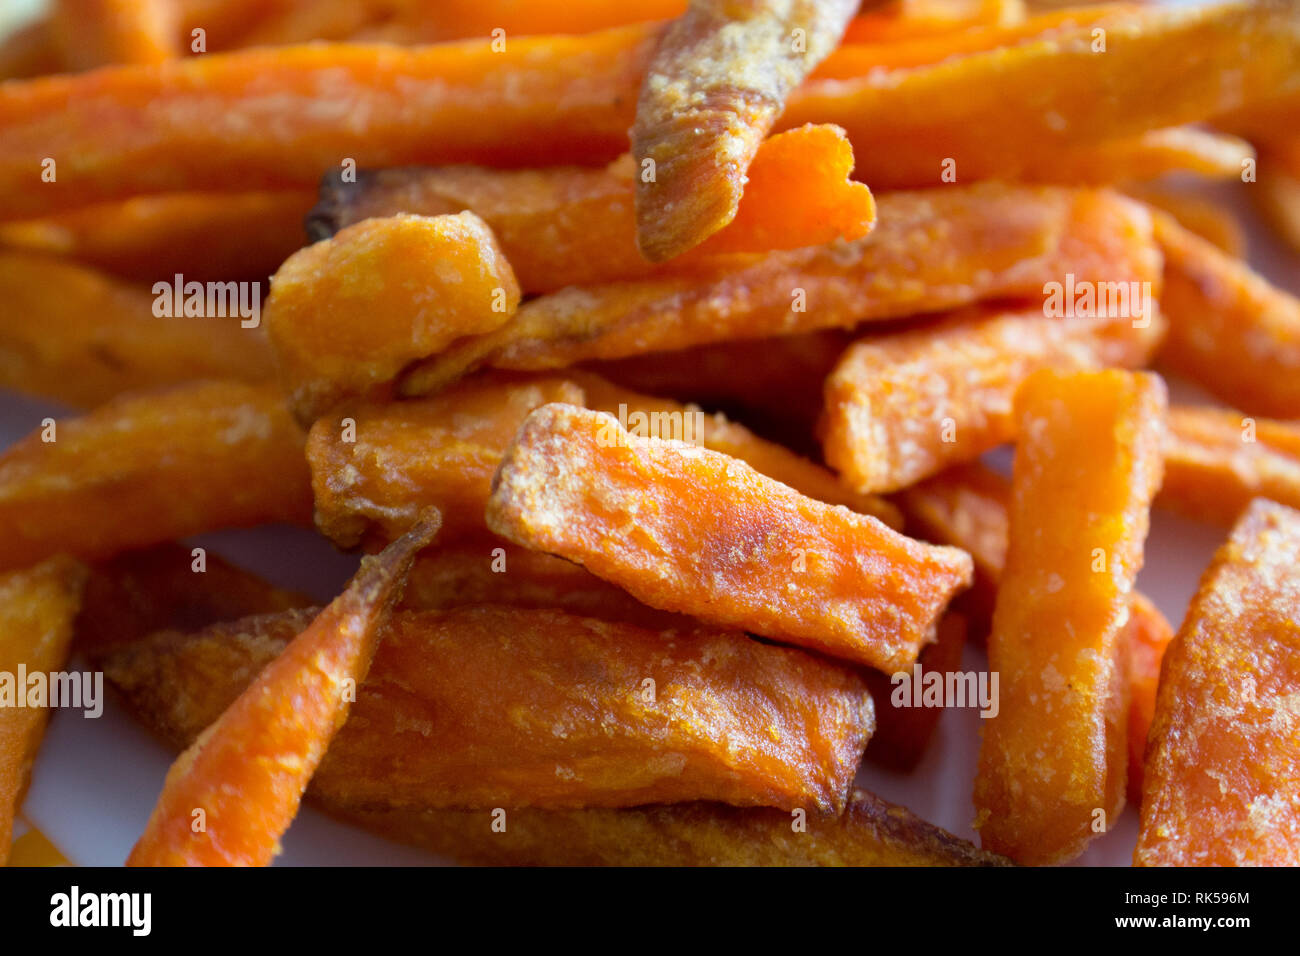 Sweet potato fires detail Stock Photo